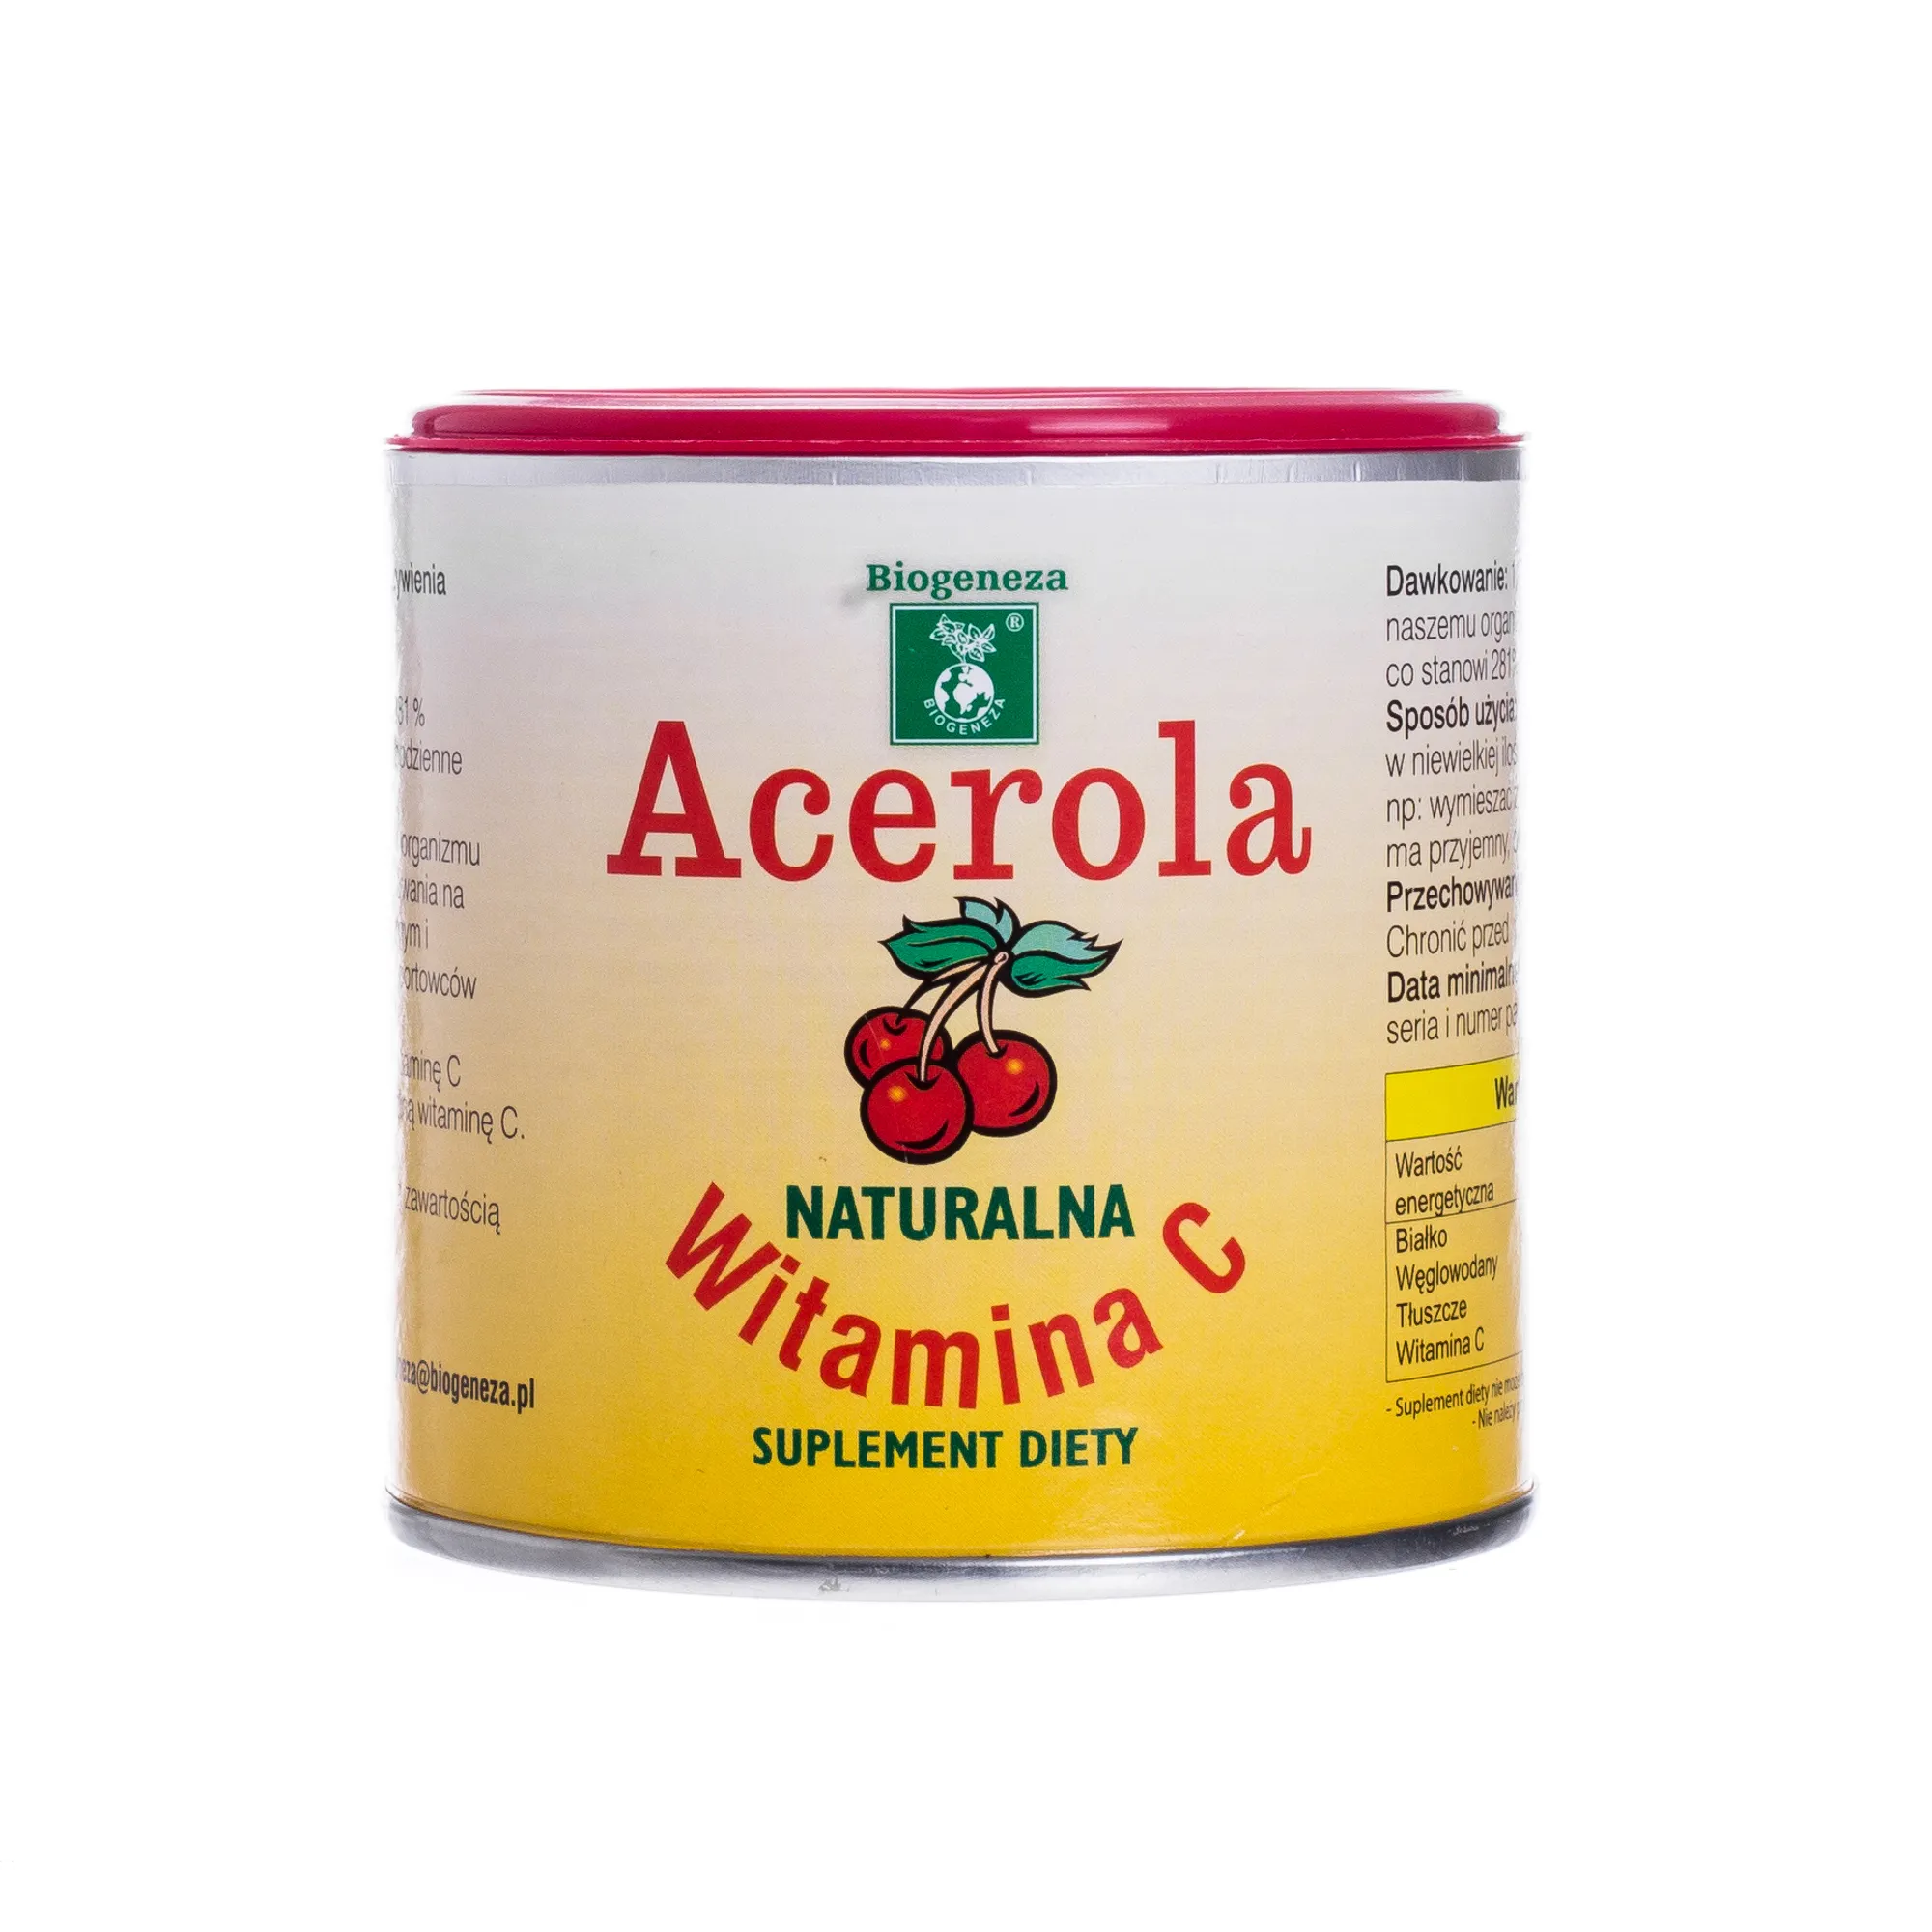 Acerola witamina C, suplement diety, 100 g 